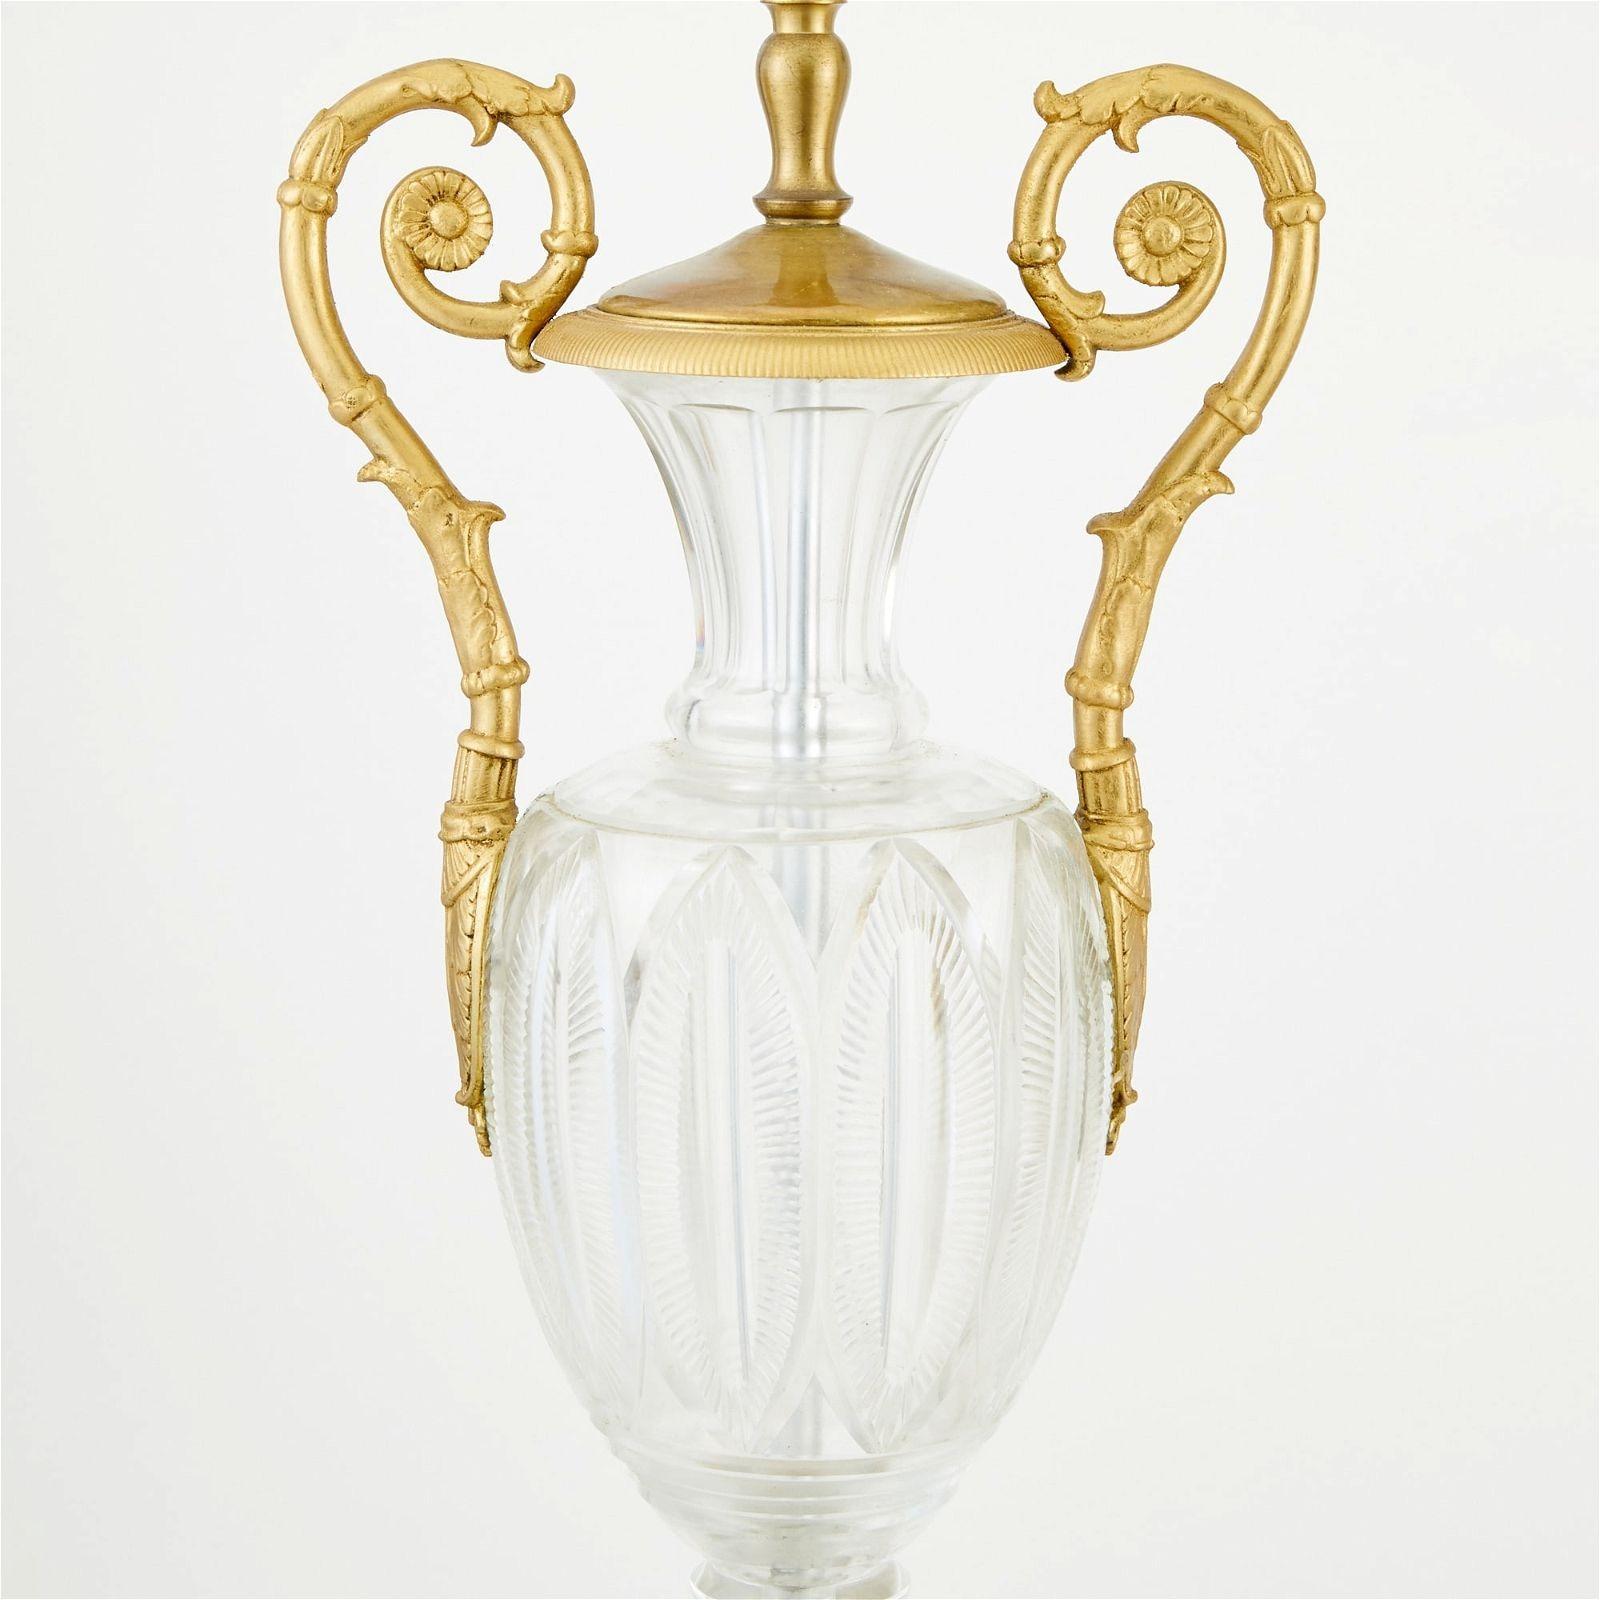 Magnifique paire de lampes de style Baccarat en cristal taillé et bronze, avec poignées à volutes en bronze sur base carrée en bronze.
Numéro de stock : LC22.